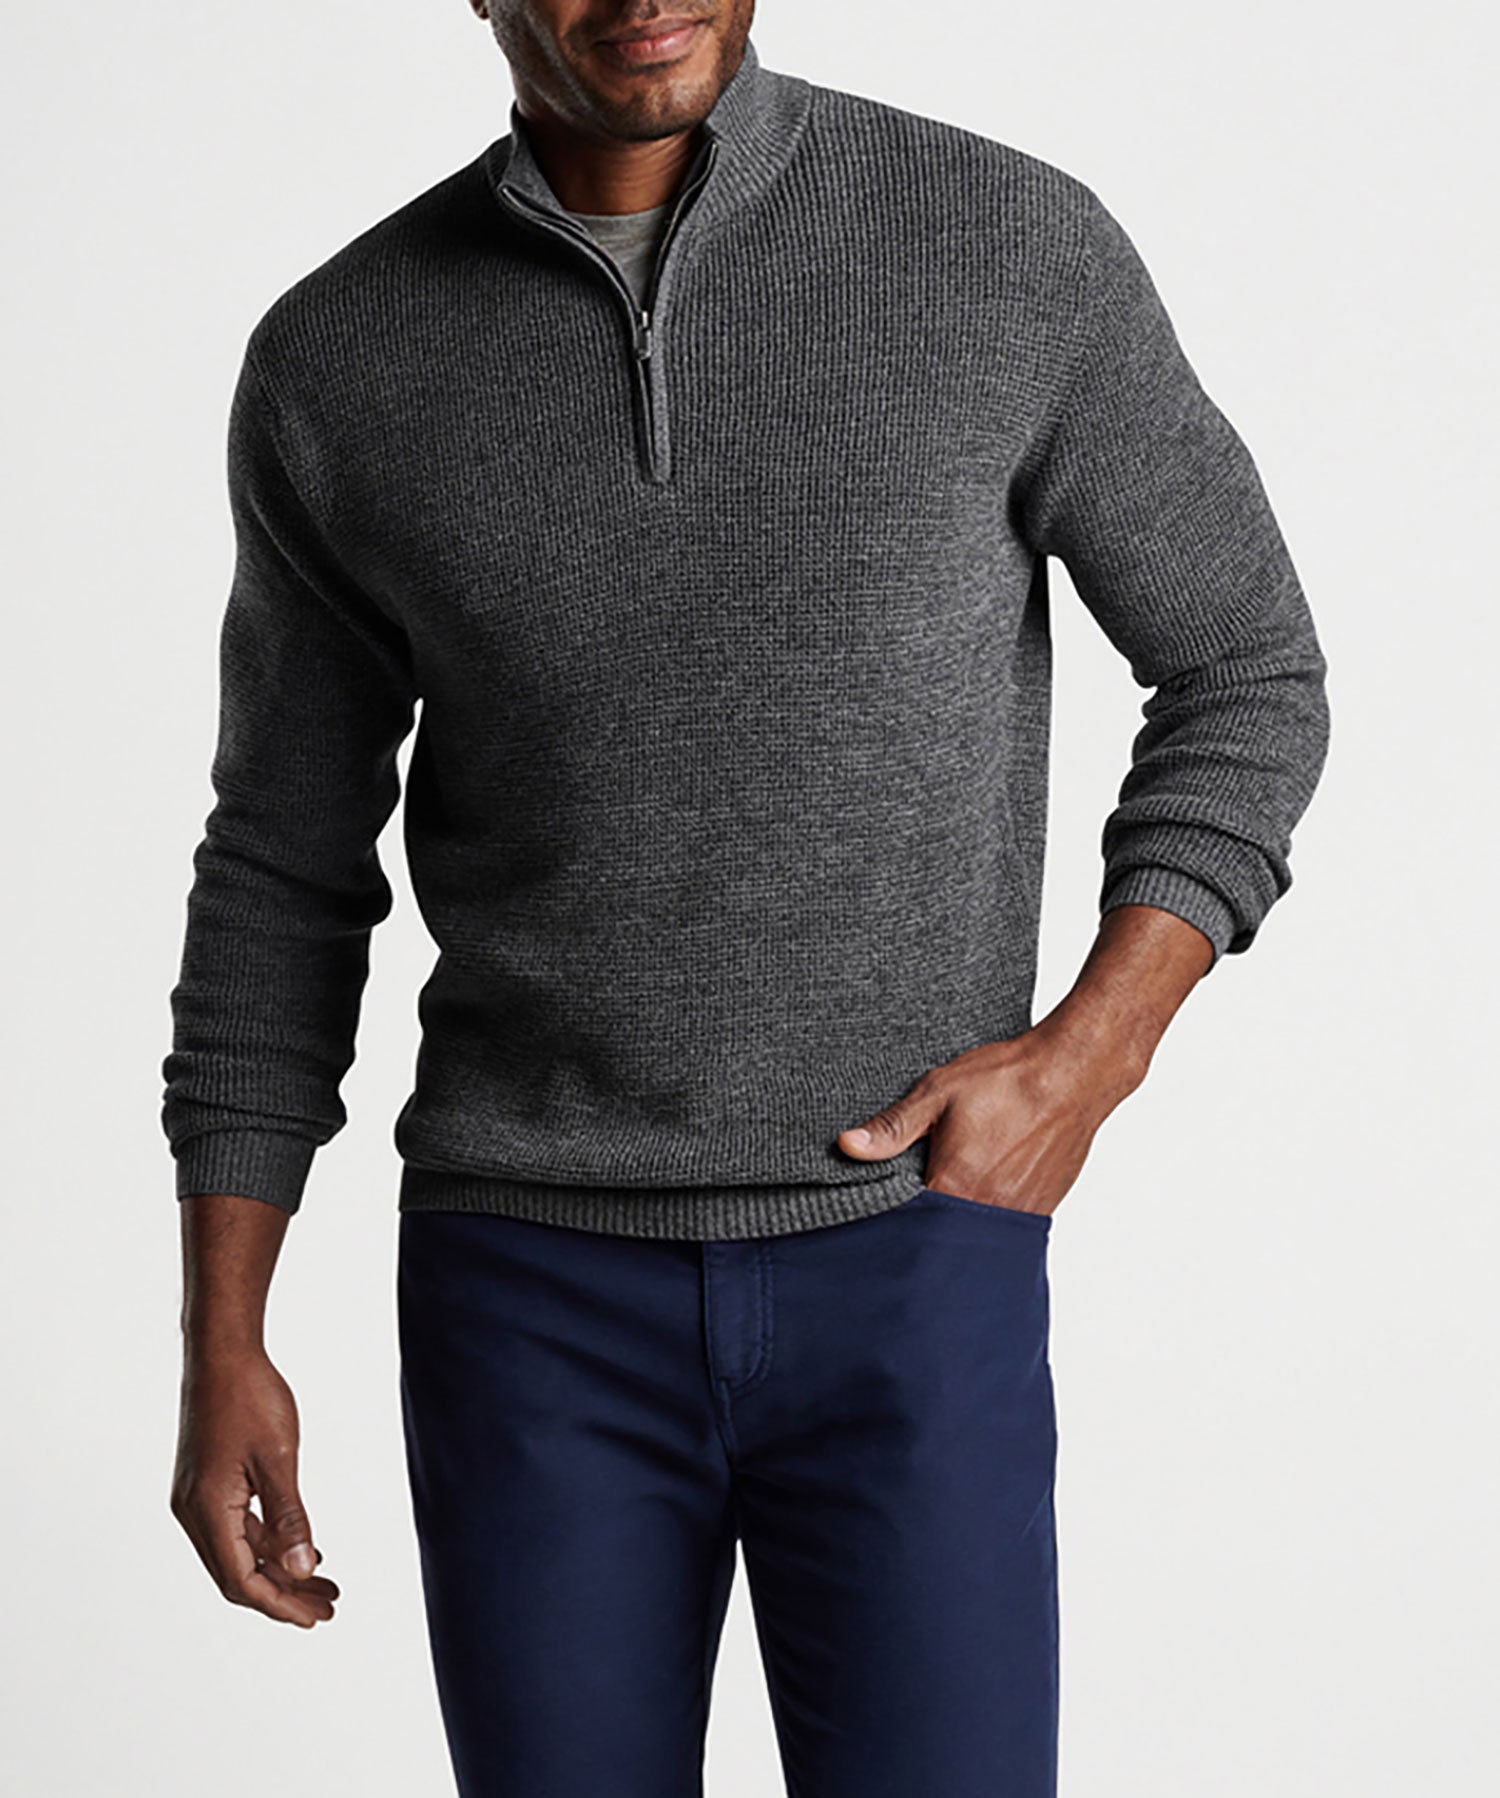 Peter Millar Kitts Twisted Quarter-Zip Sweater, Men's Big & Tall